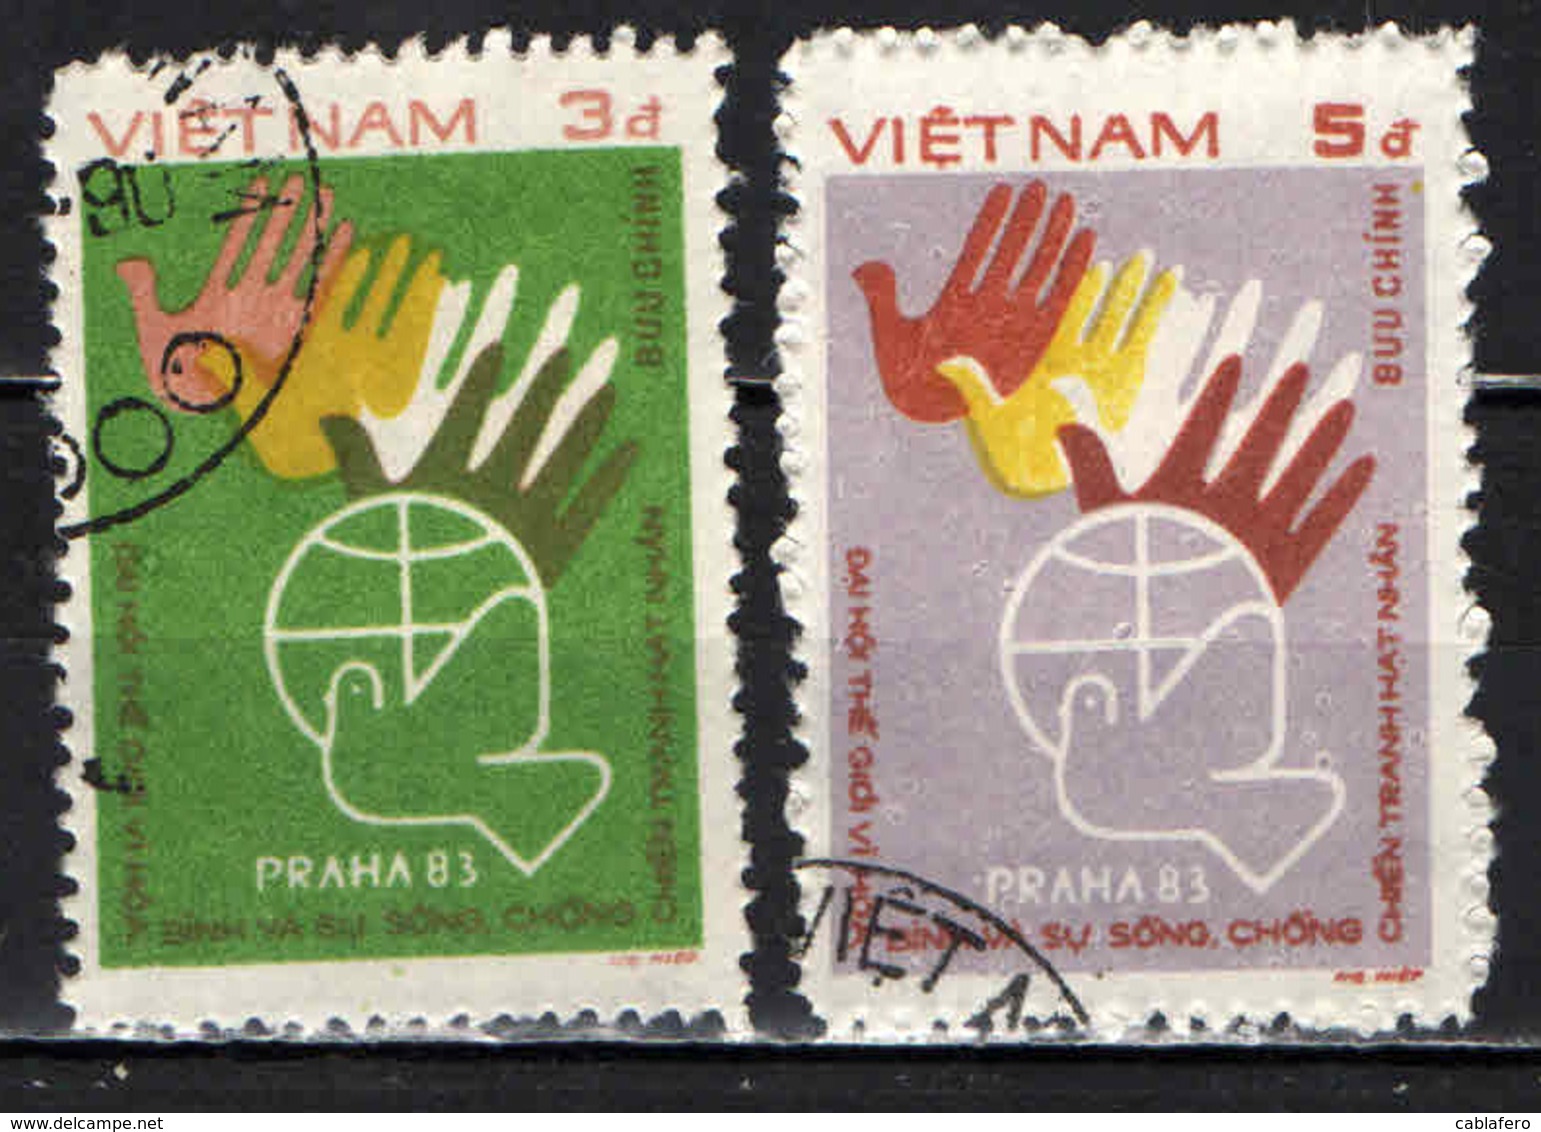 VIETNAM - 1984 - CONFERENZA DI PACE A PRAGA - USATI - Vietnam